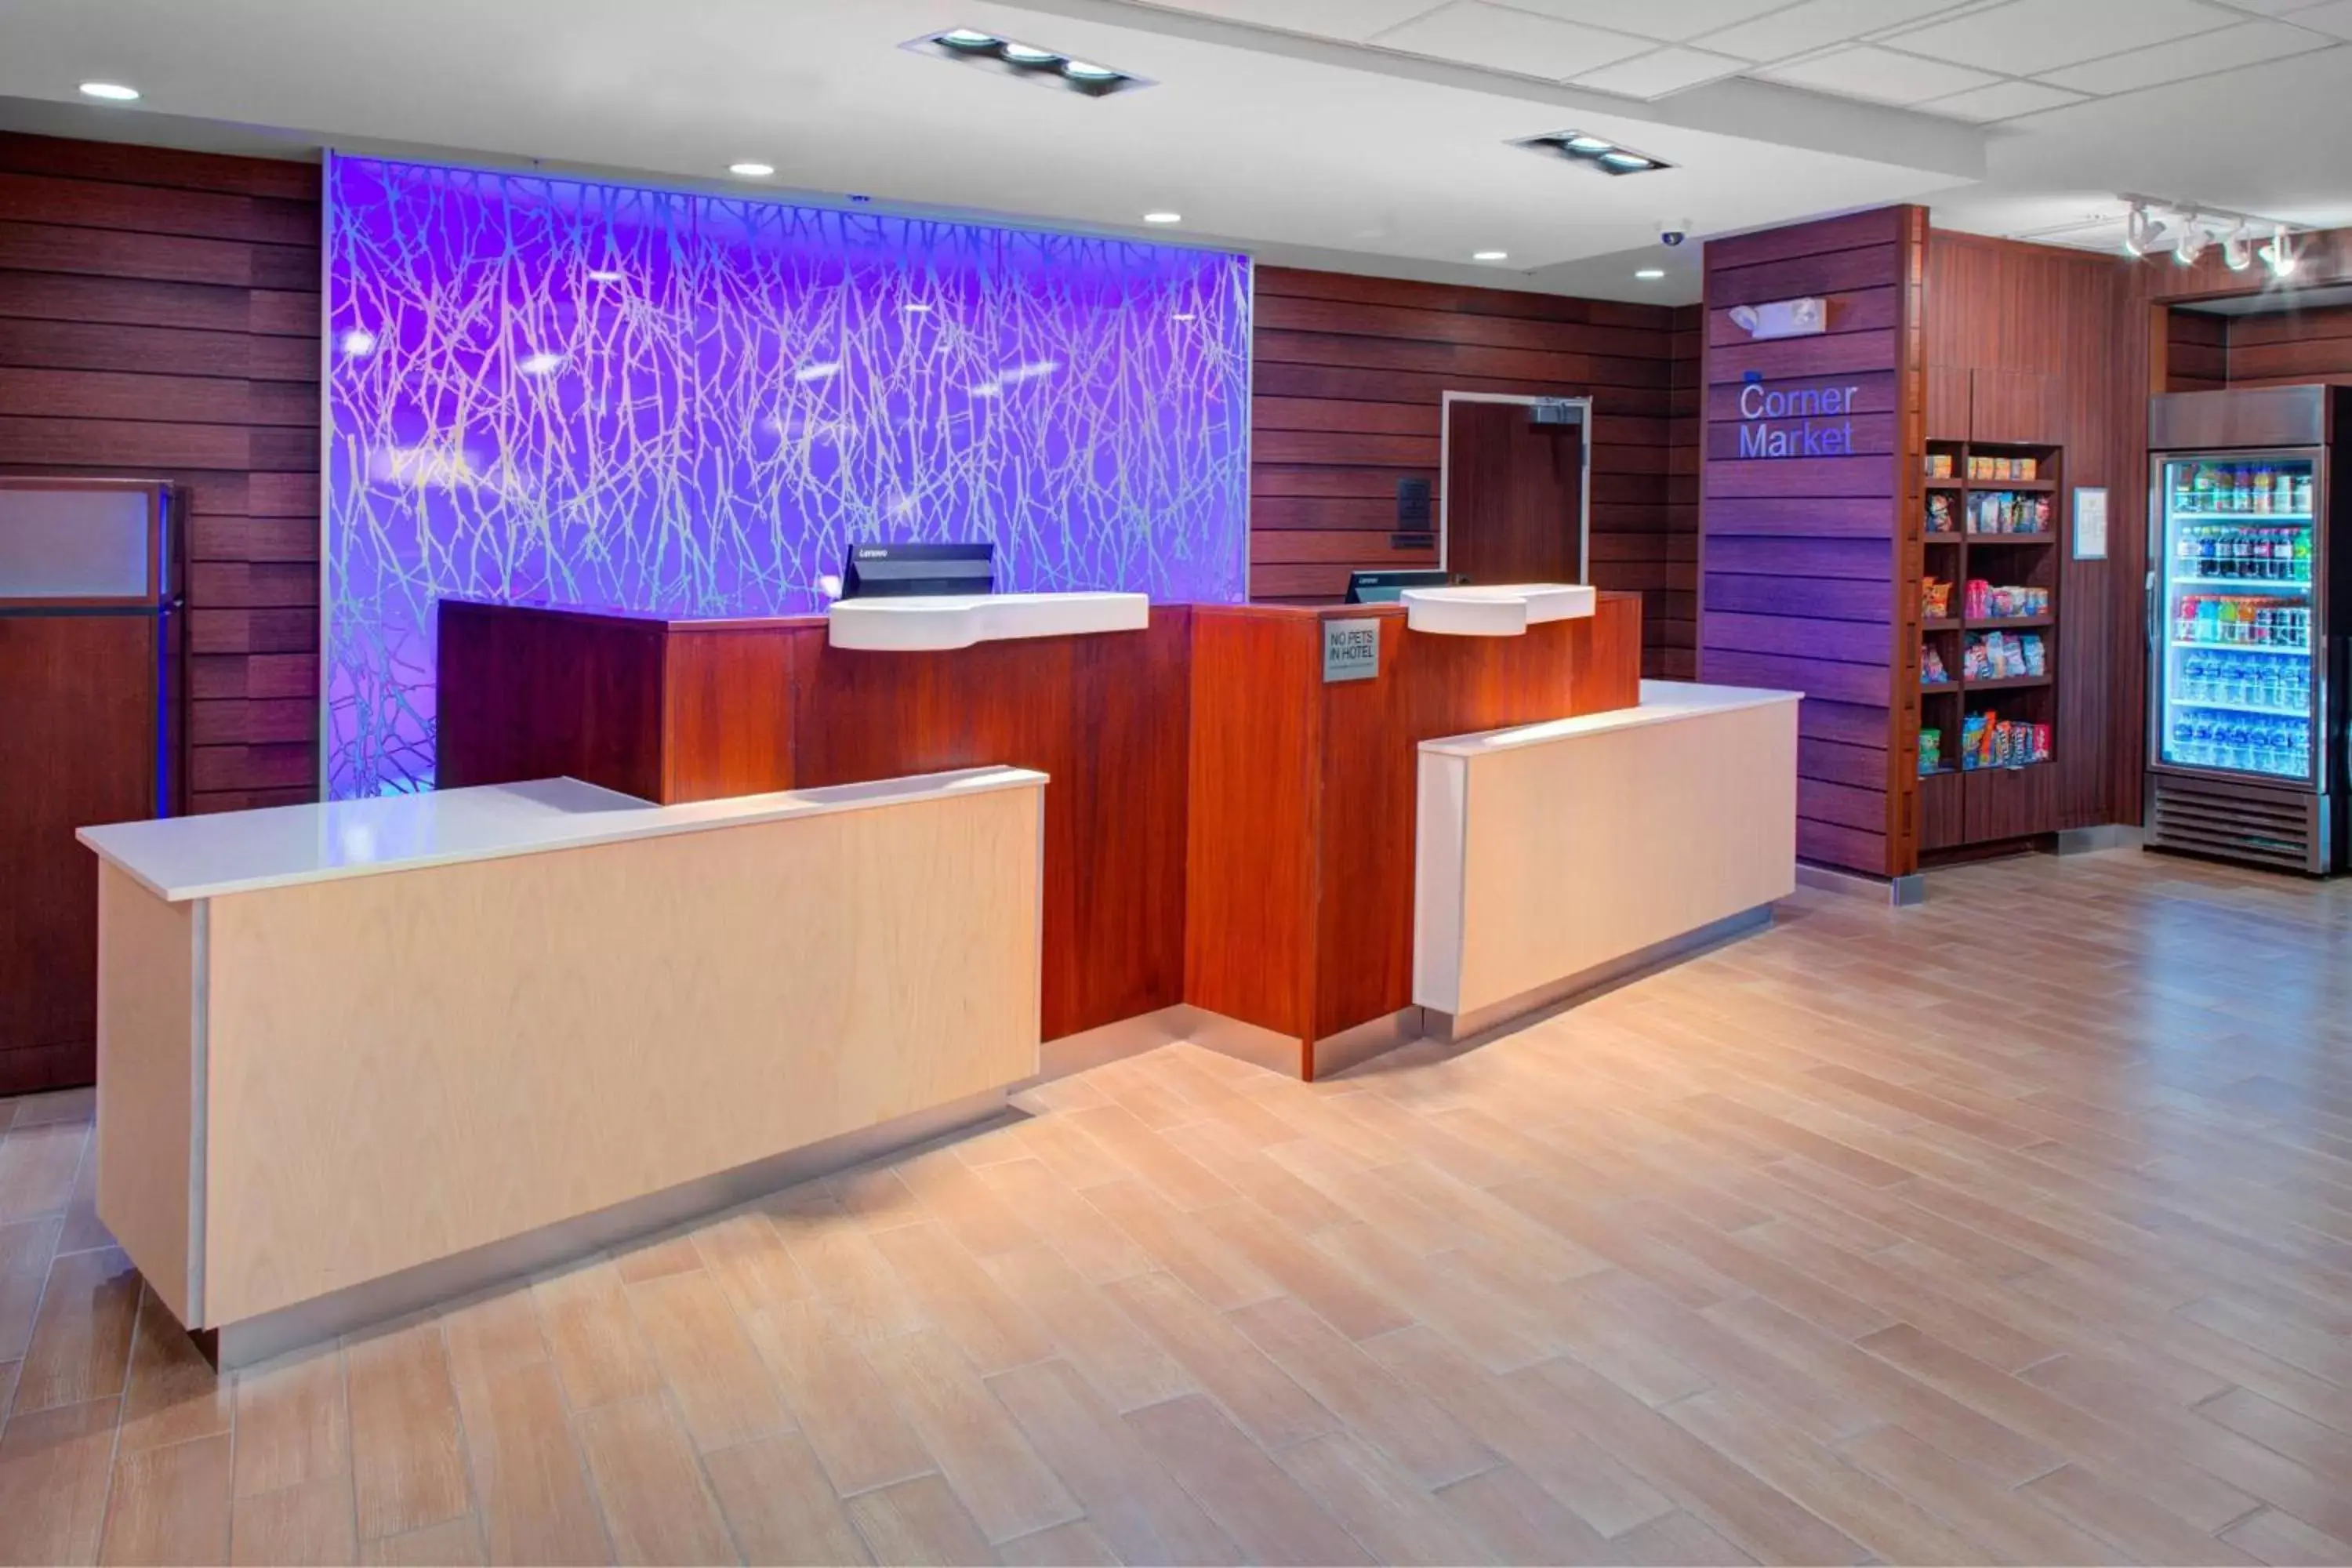 Lobby or reception, Lobby/Reception in Fairfield Inn & Suites by Marriott Hollister